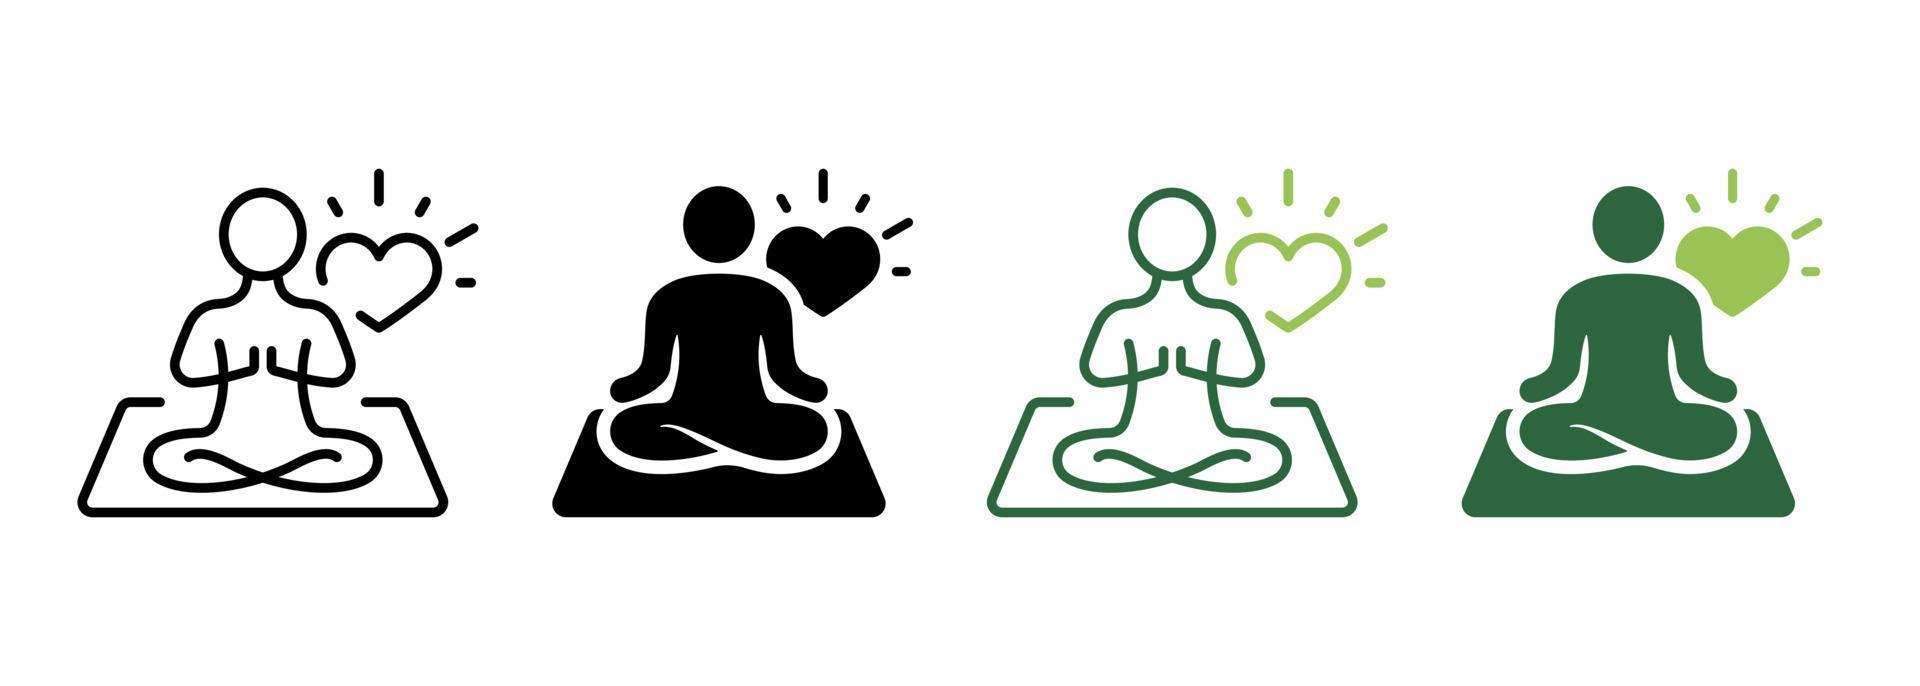 mantra yoga silueta e icono de línea. meditar relajarse pictograma. icono de chakra espiritual zen. calma aura galaxia serenidad y salud cuerpo. logotipo de meditación. trazo editable. ilustración vectorial aislada. vector